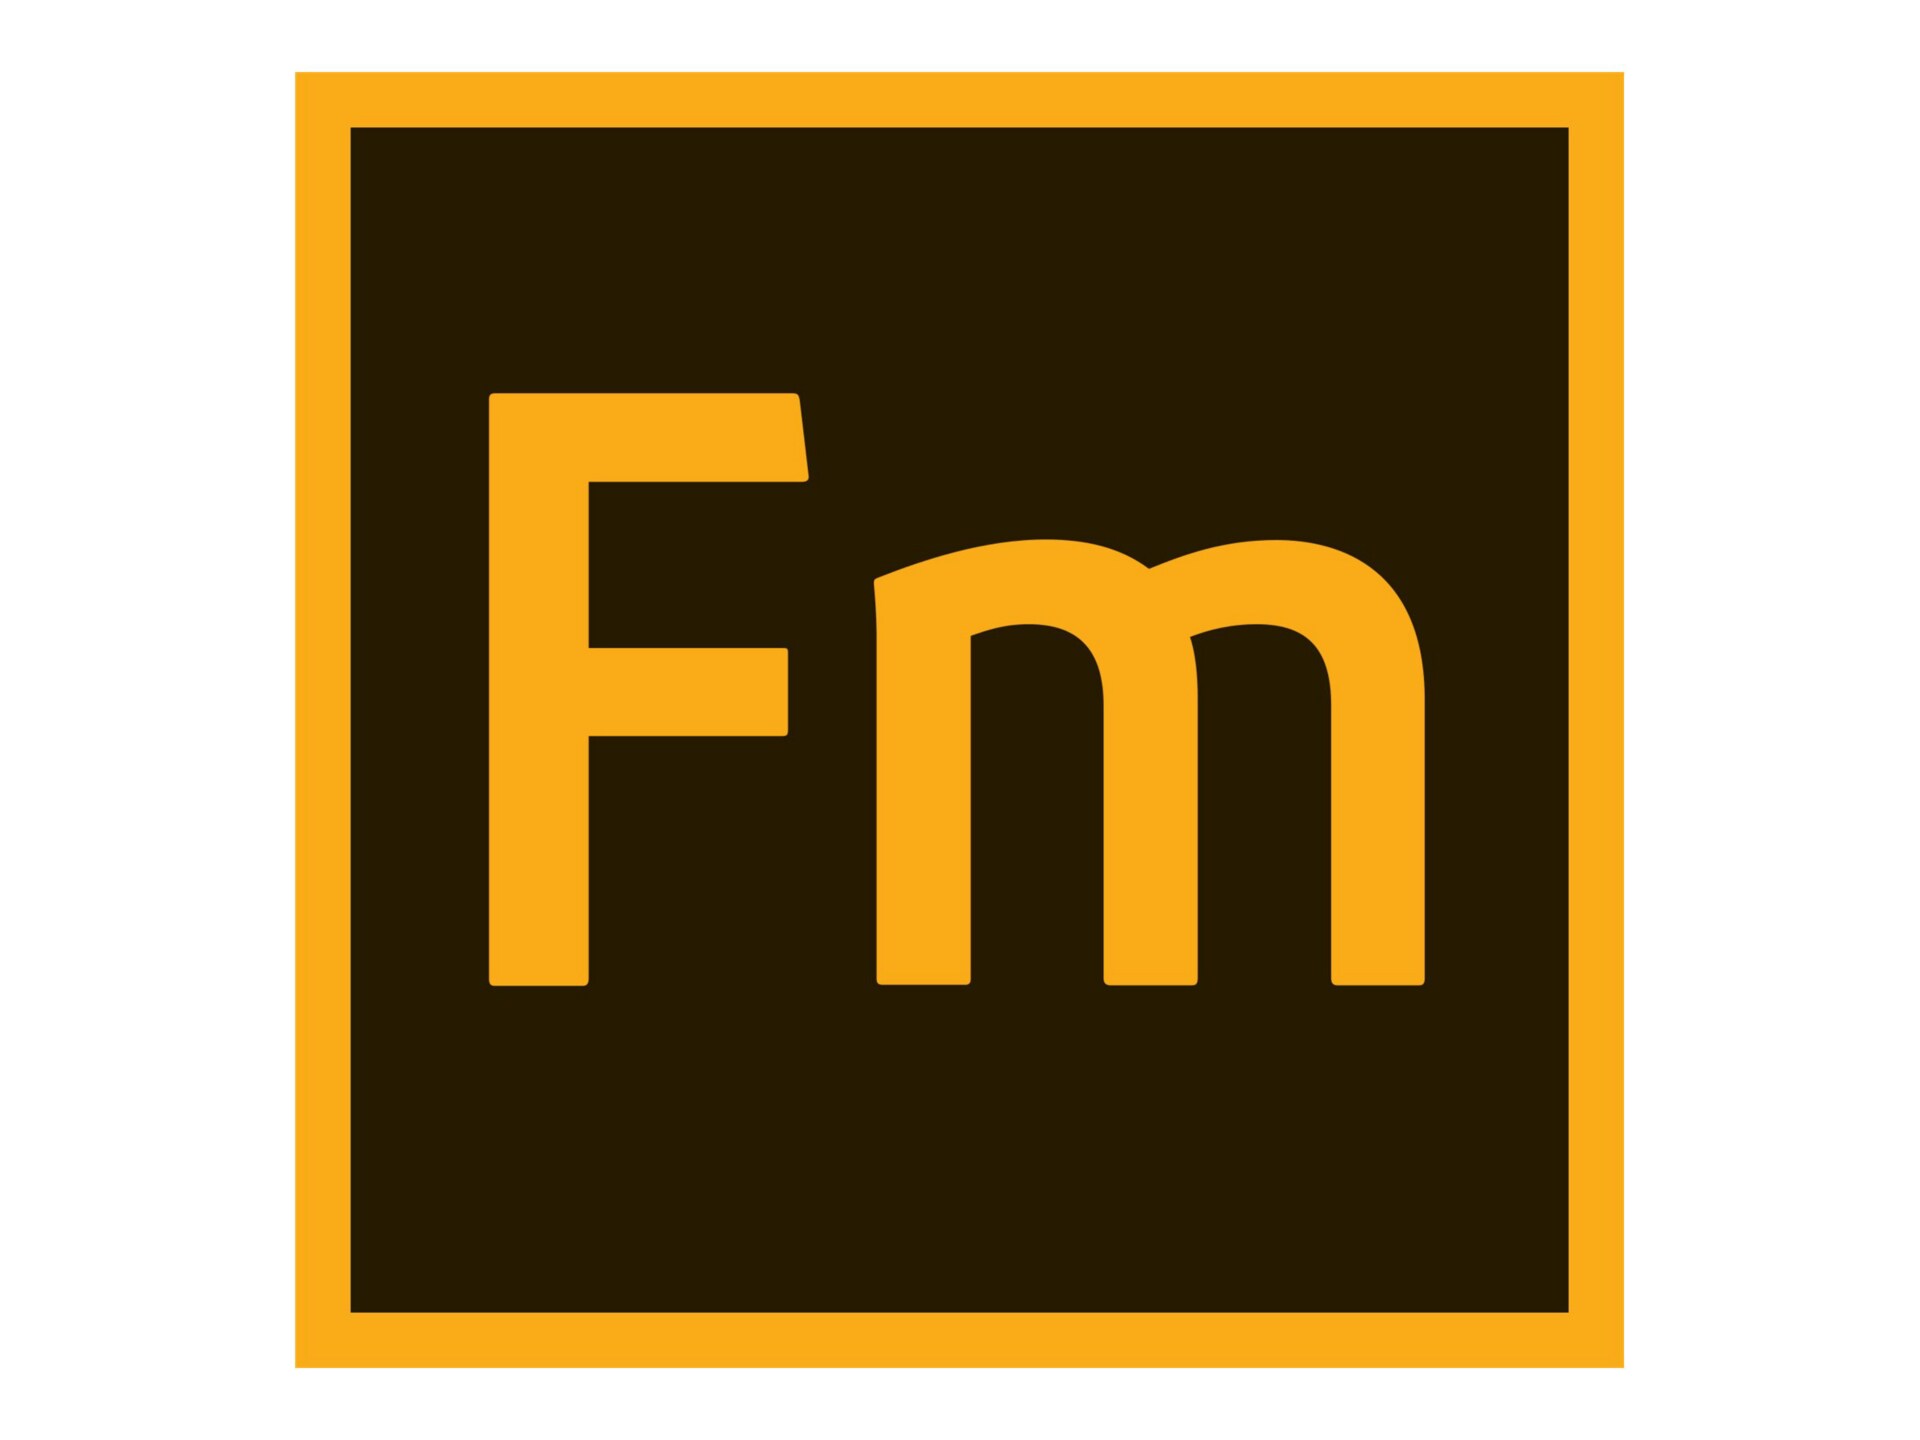 Adobe FrameMaker for enterprise - Subscription New (annual) - 1 user